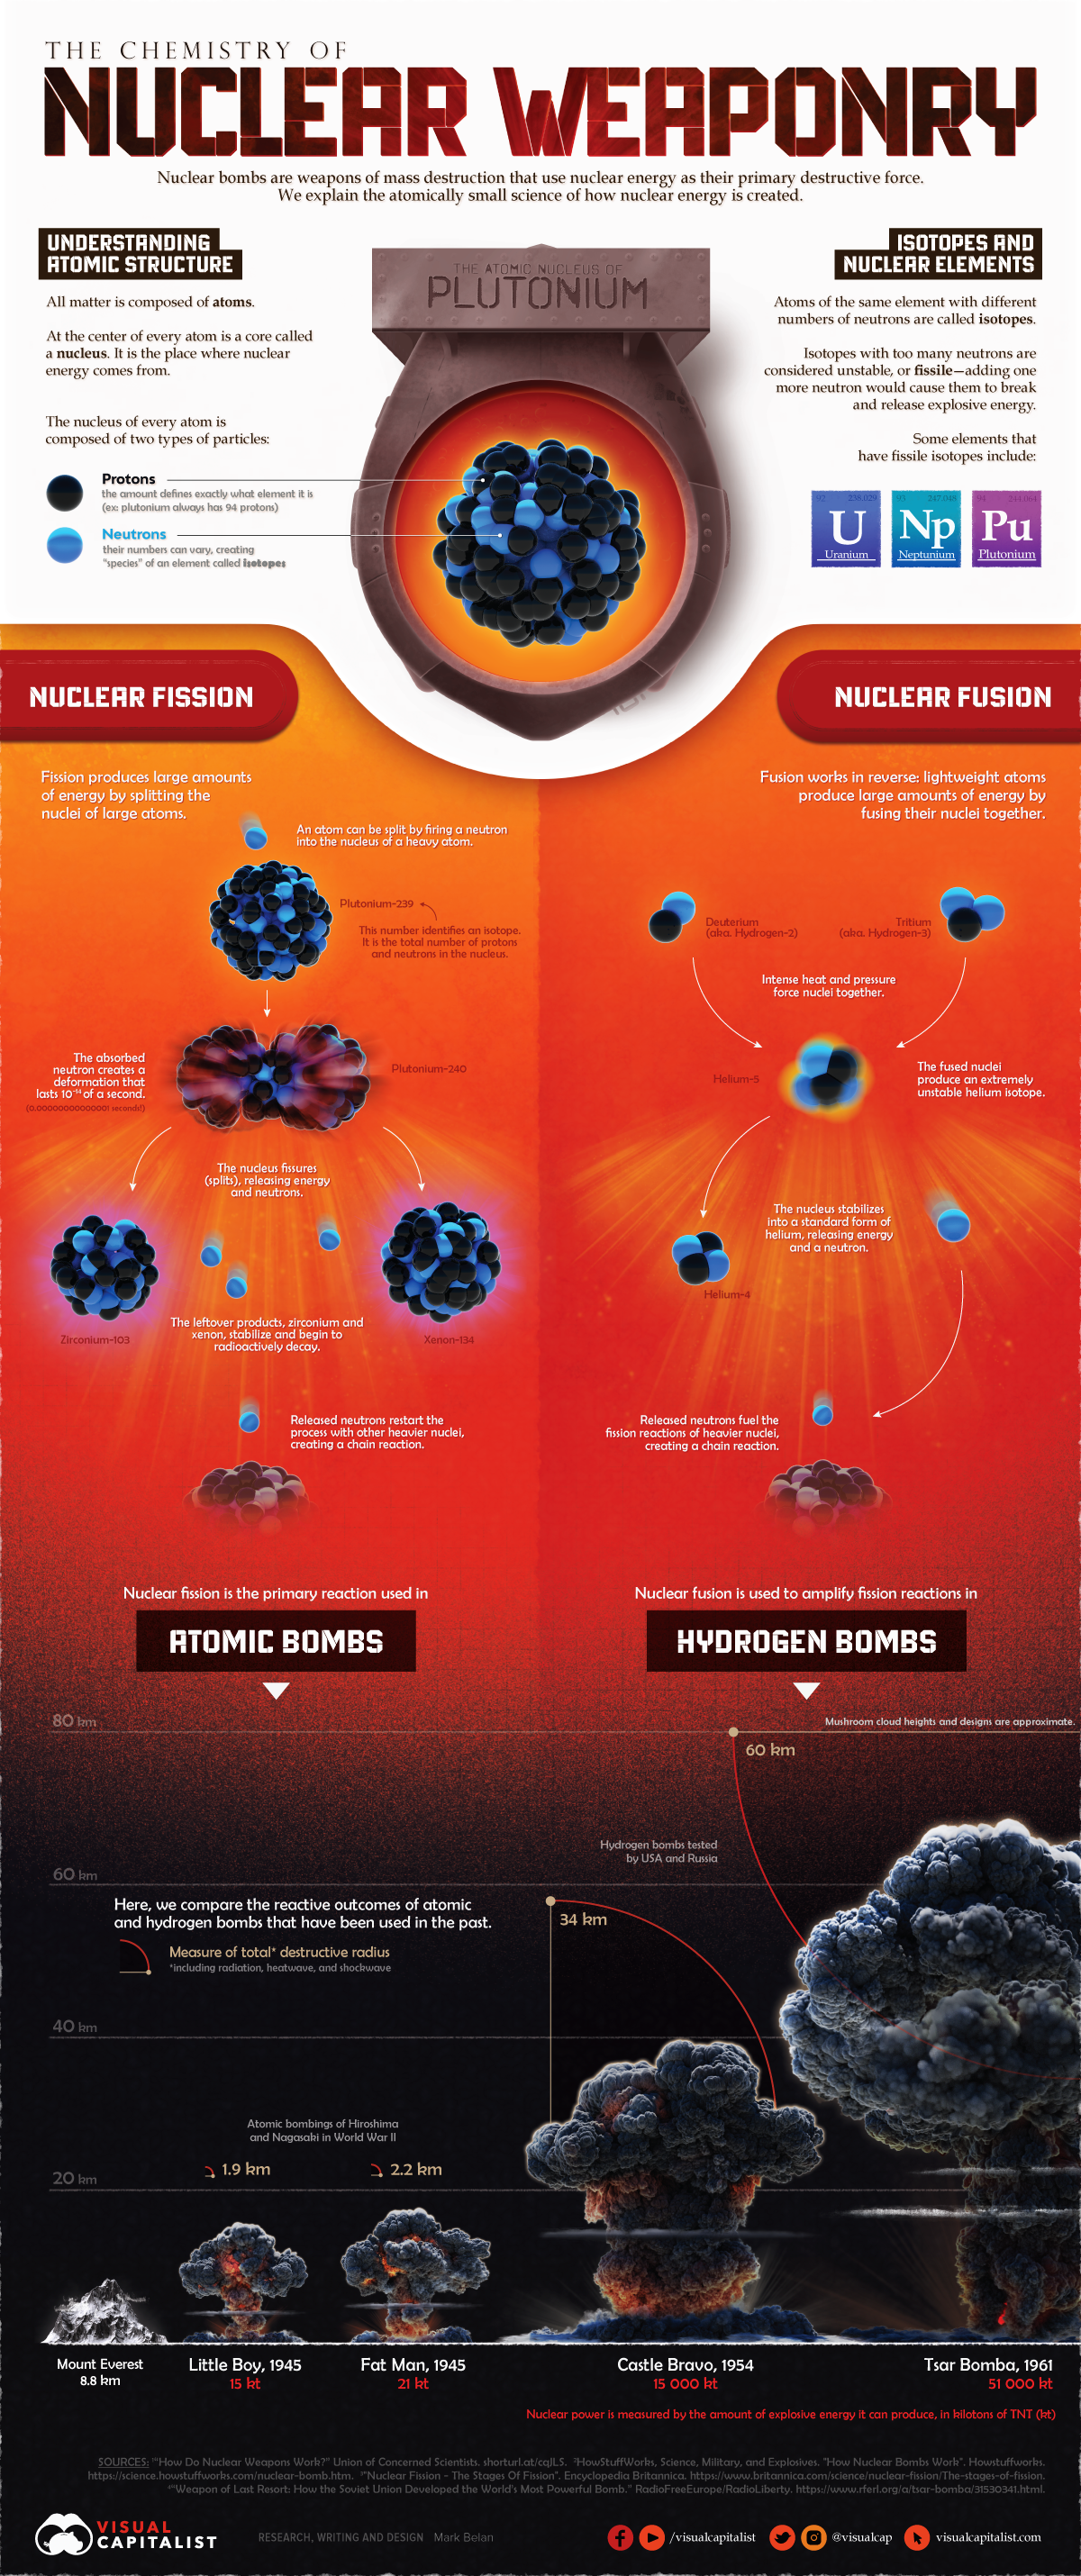 esta infografía visualiza la ciencia de cómo funcionan las armas nucleares, incluidos los procesos de fisión y fusión